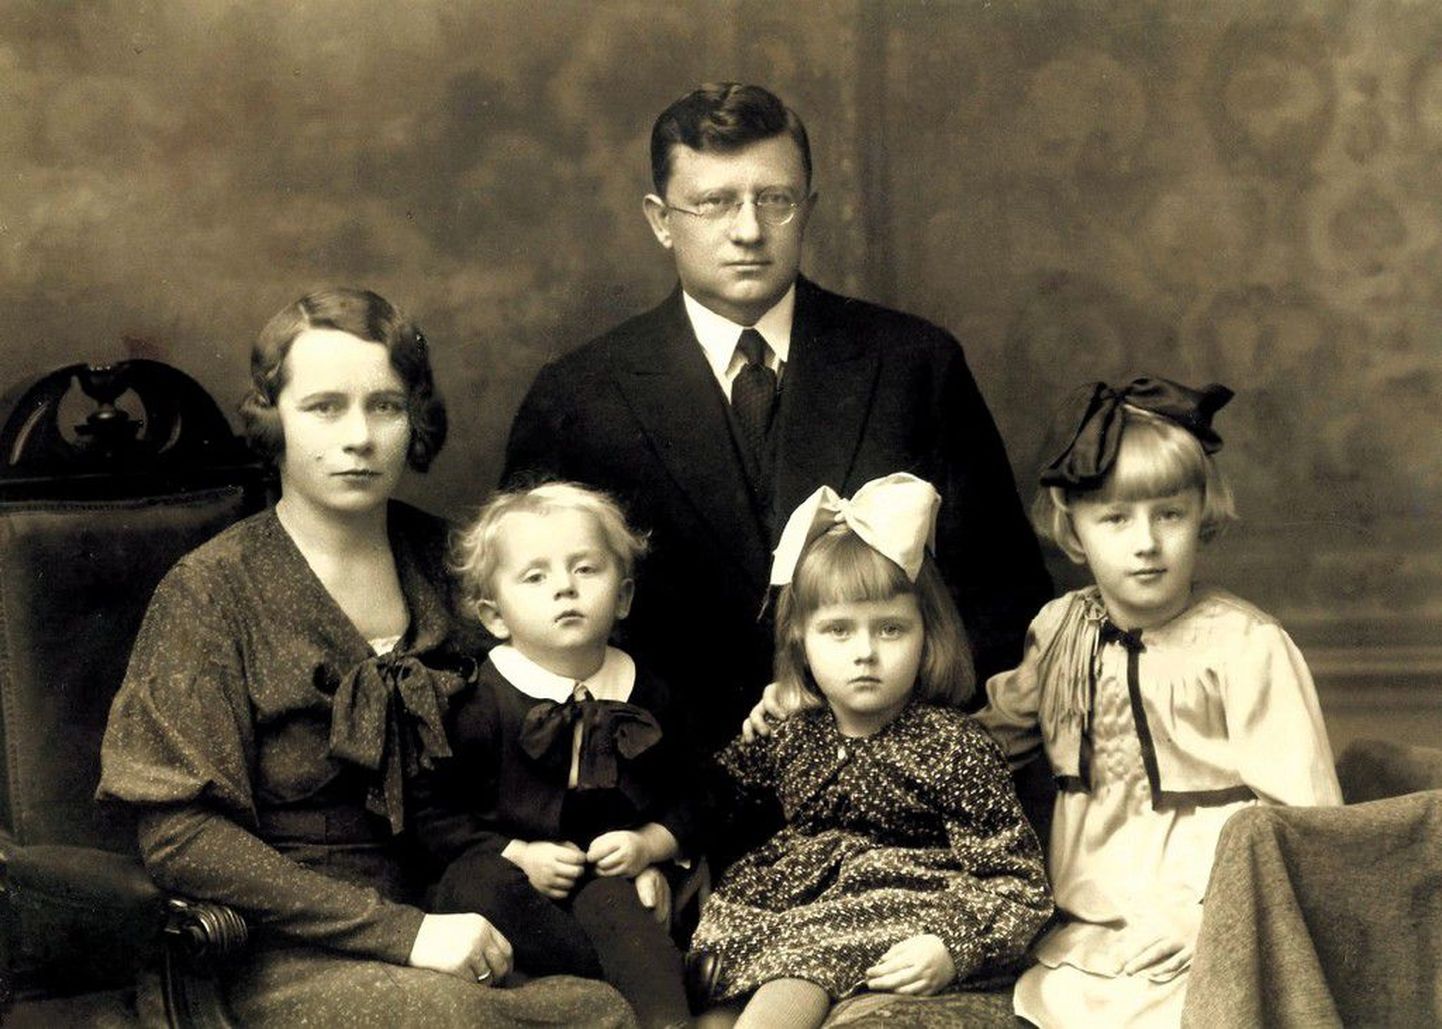 Soonpää perekond  1930. aastate esimesel poolel. Antonie ja Karl Soonpää oma kolme lapsega (vasakult Henn, Helvi Maie ja Helju Laine).  1944. aastal pärast Karl Soonpää hukkumist pääses pere põgenema. Soonpää kolm last elavad praegu Ameerika Ühendriikides.